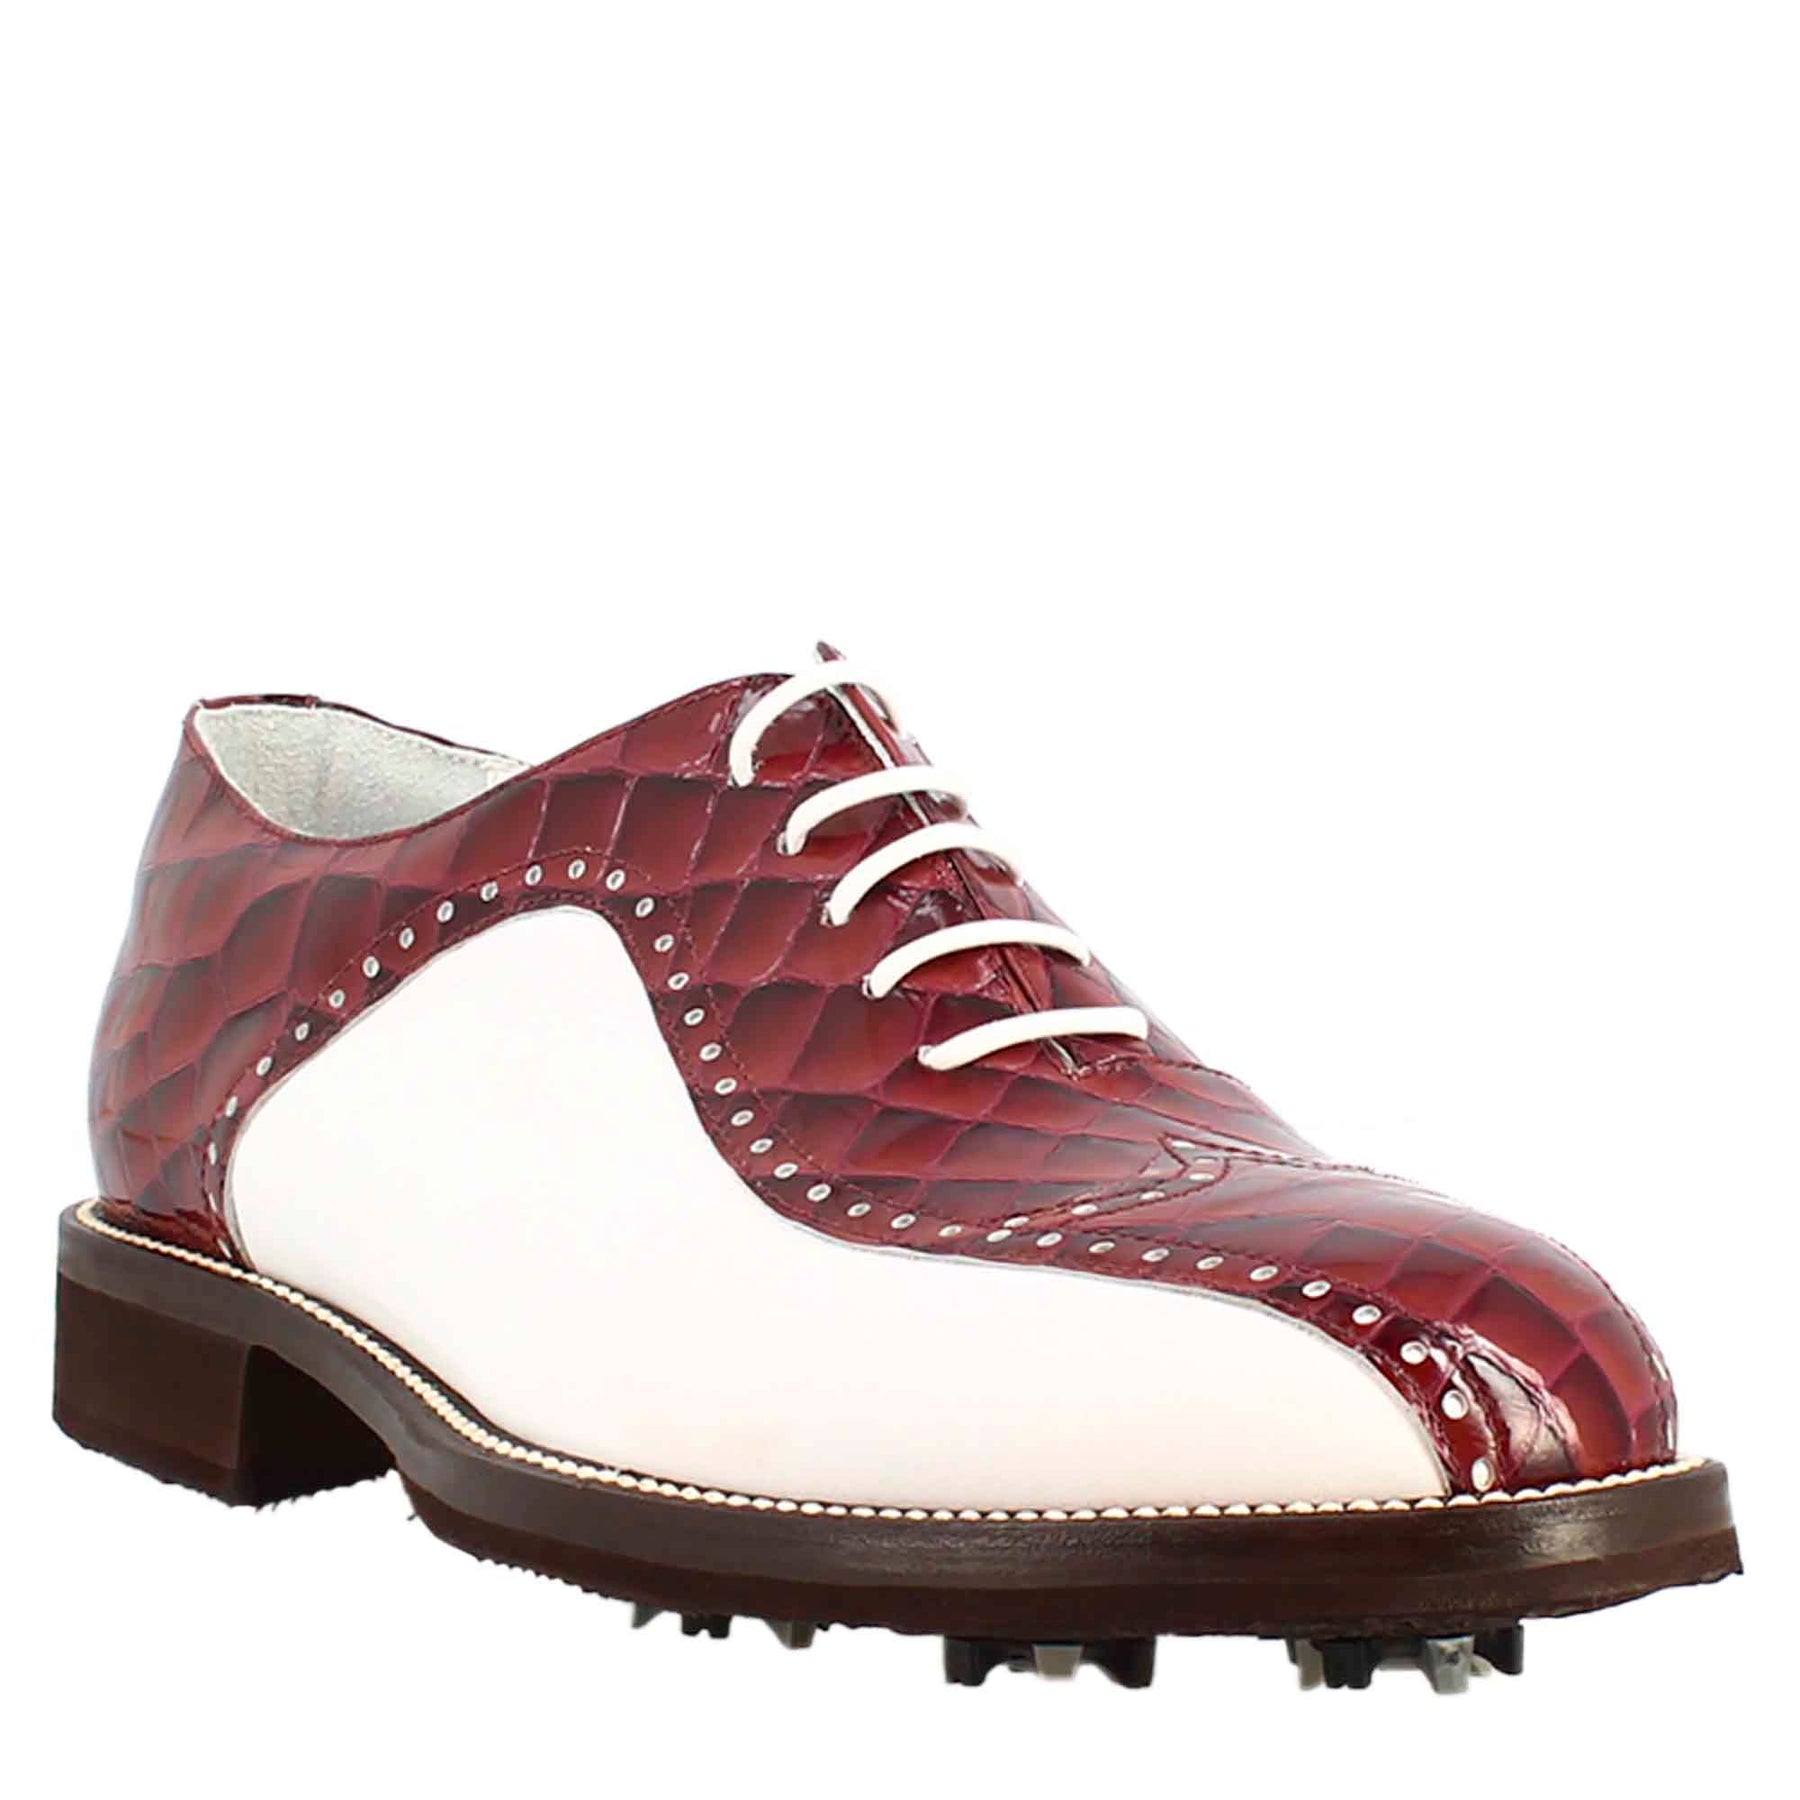 Chaussures de golf en cuir blanc et bordeaux fabriquées à la main